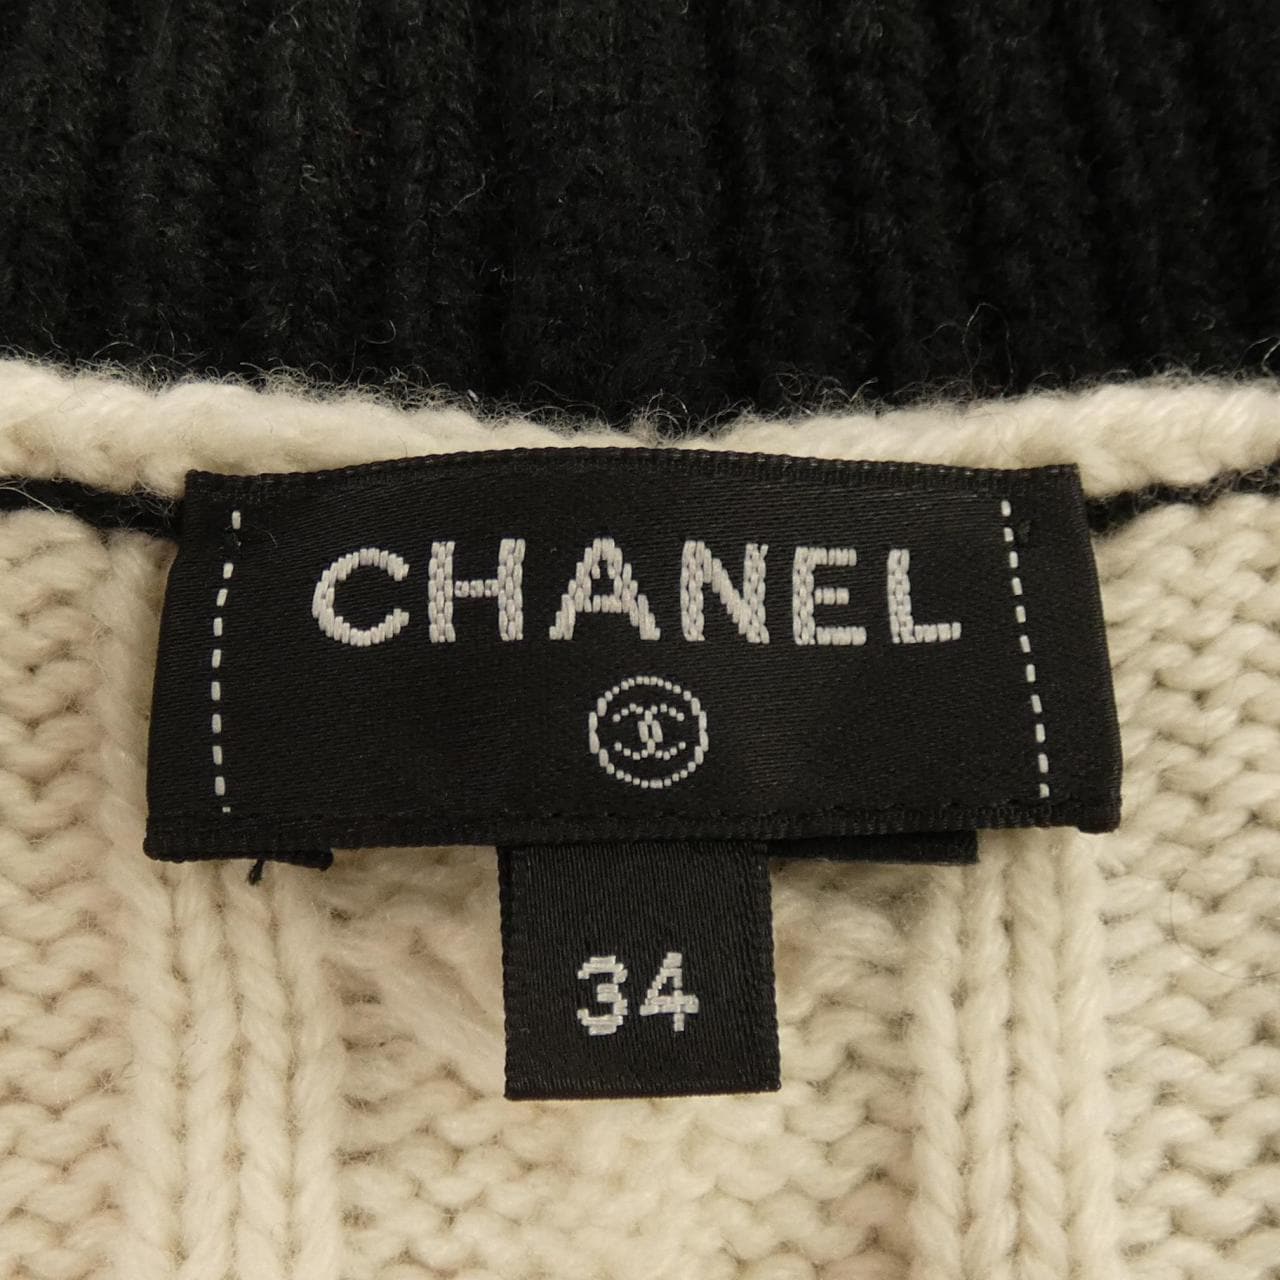 CHANEL CHANEL knitwear